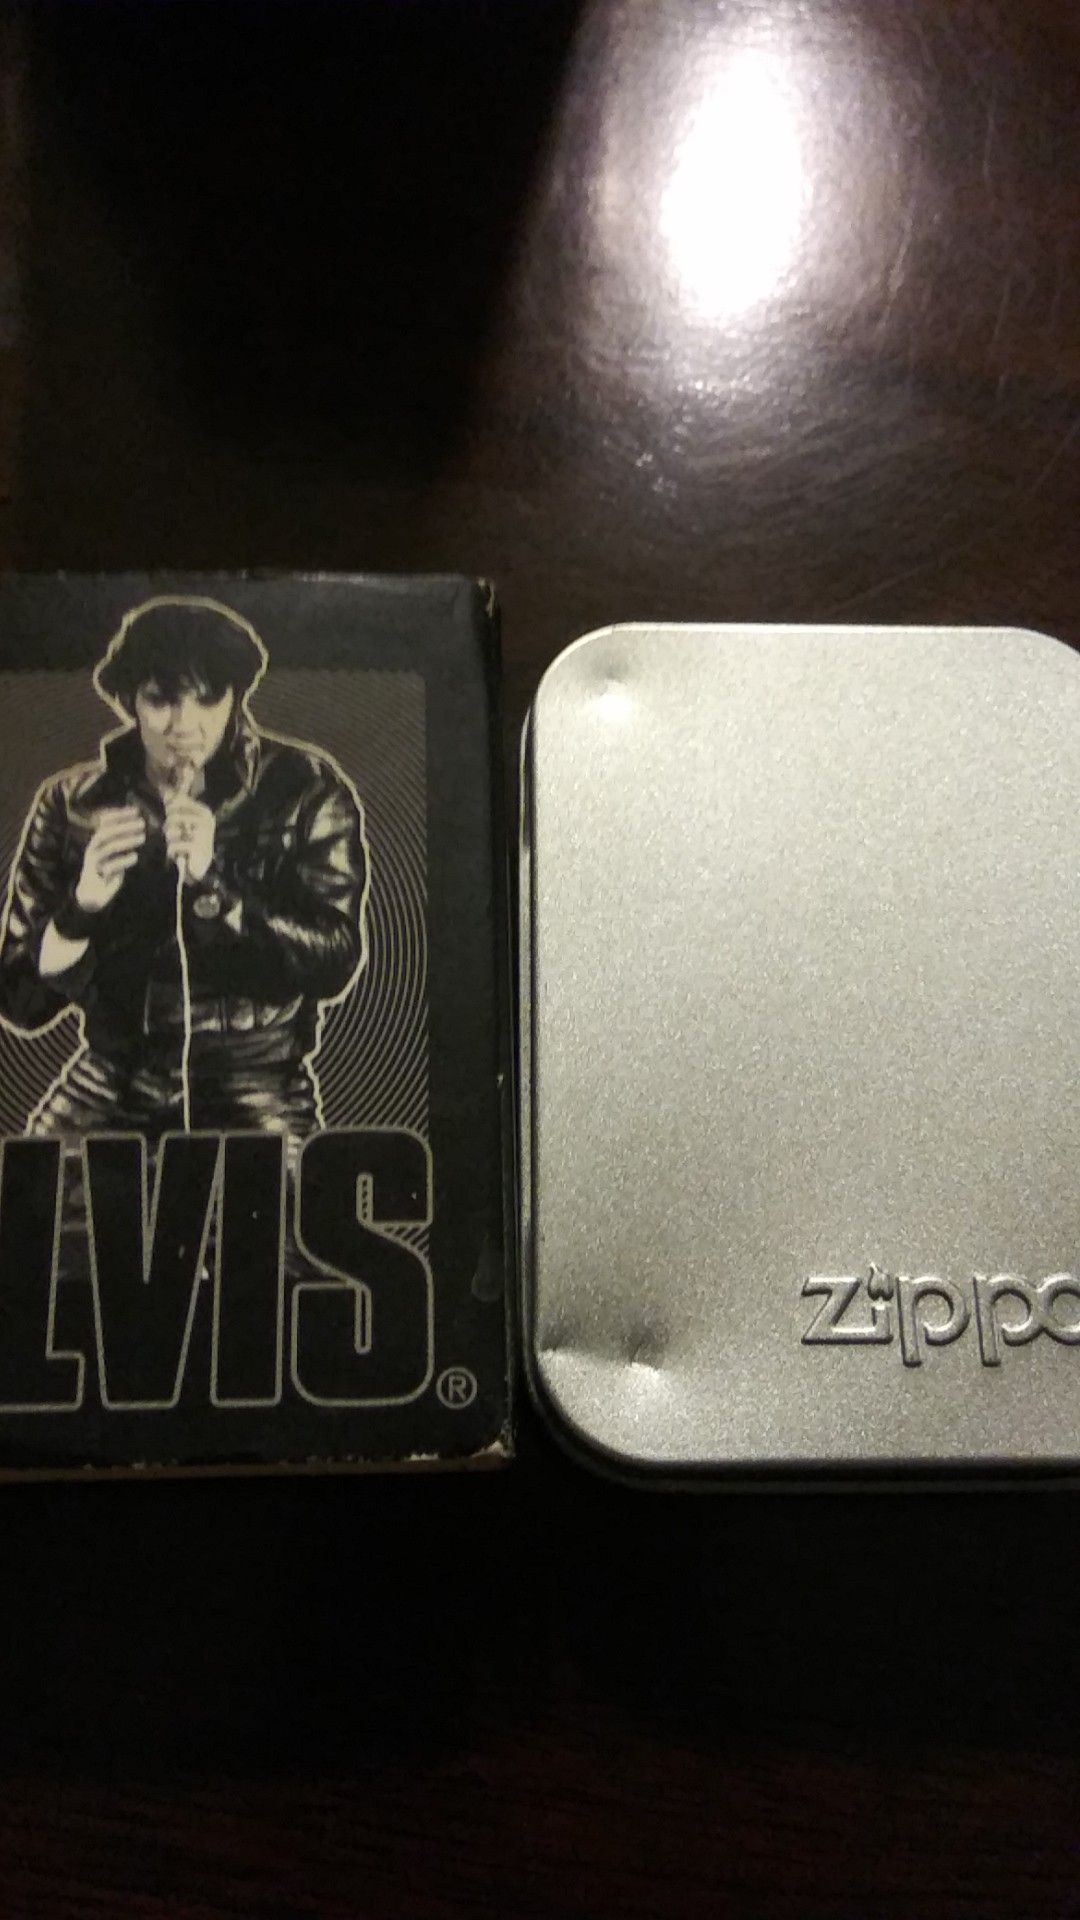 Elvis presley zippo collectors edition